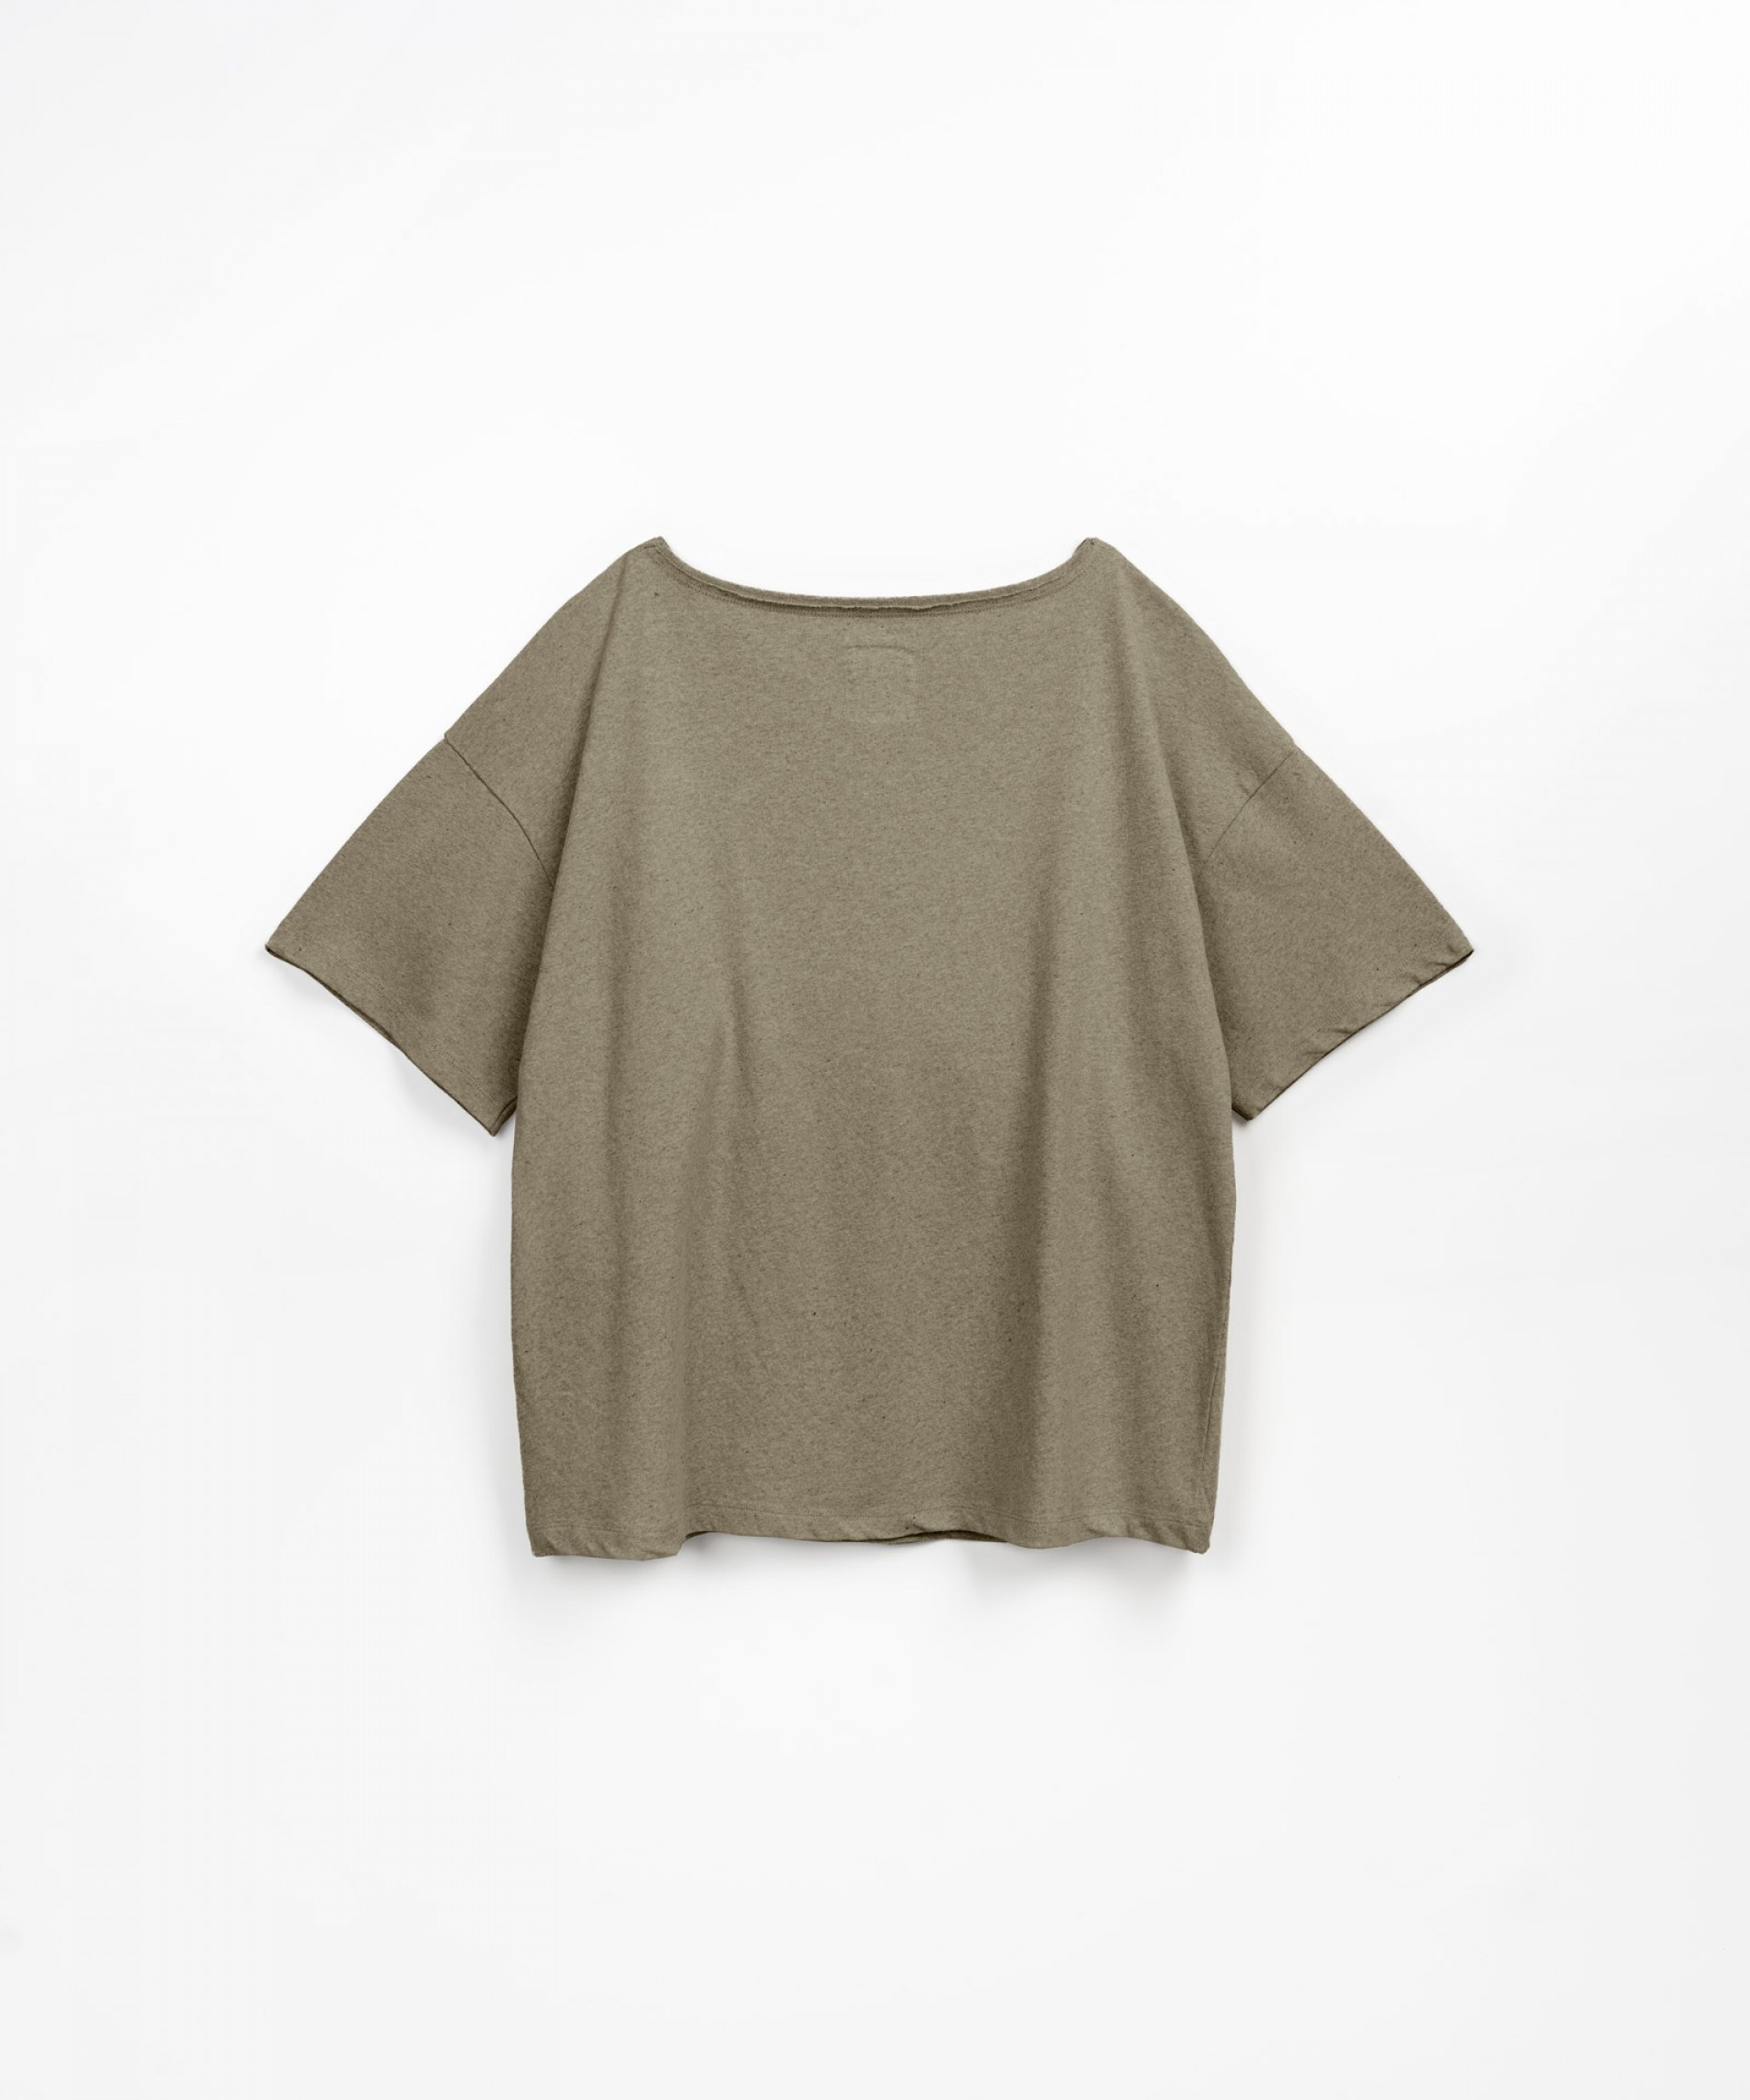 Jersey-stitch T-shirt with neckline detail | Textile Art